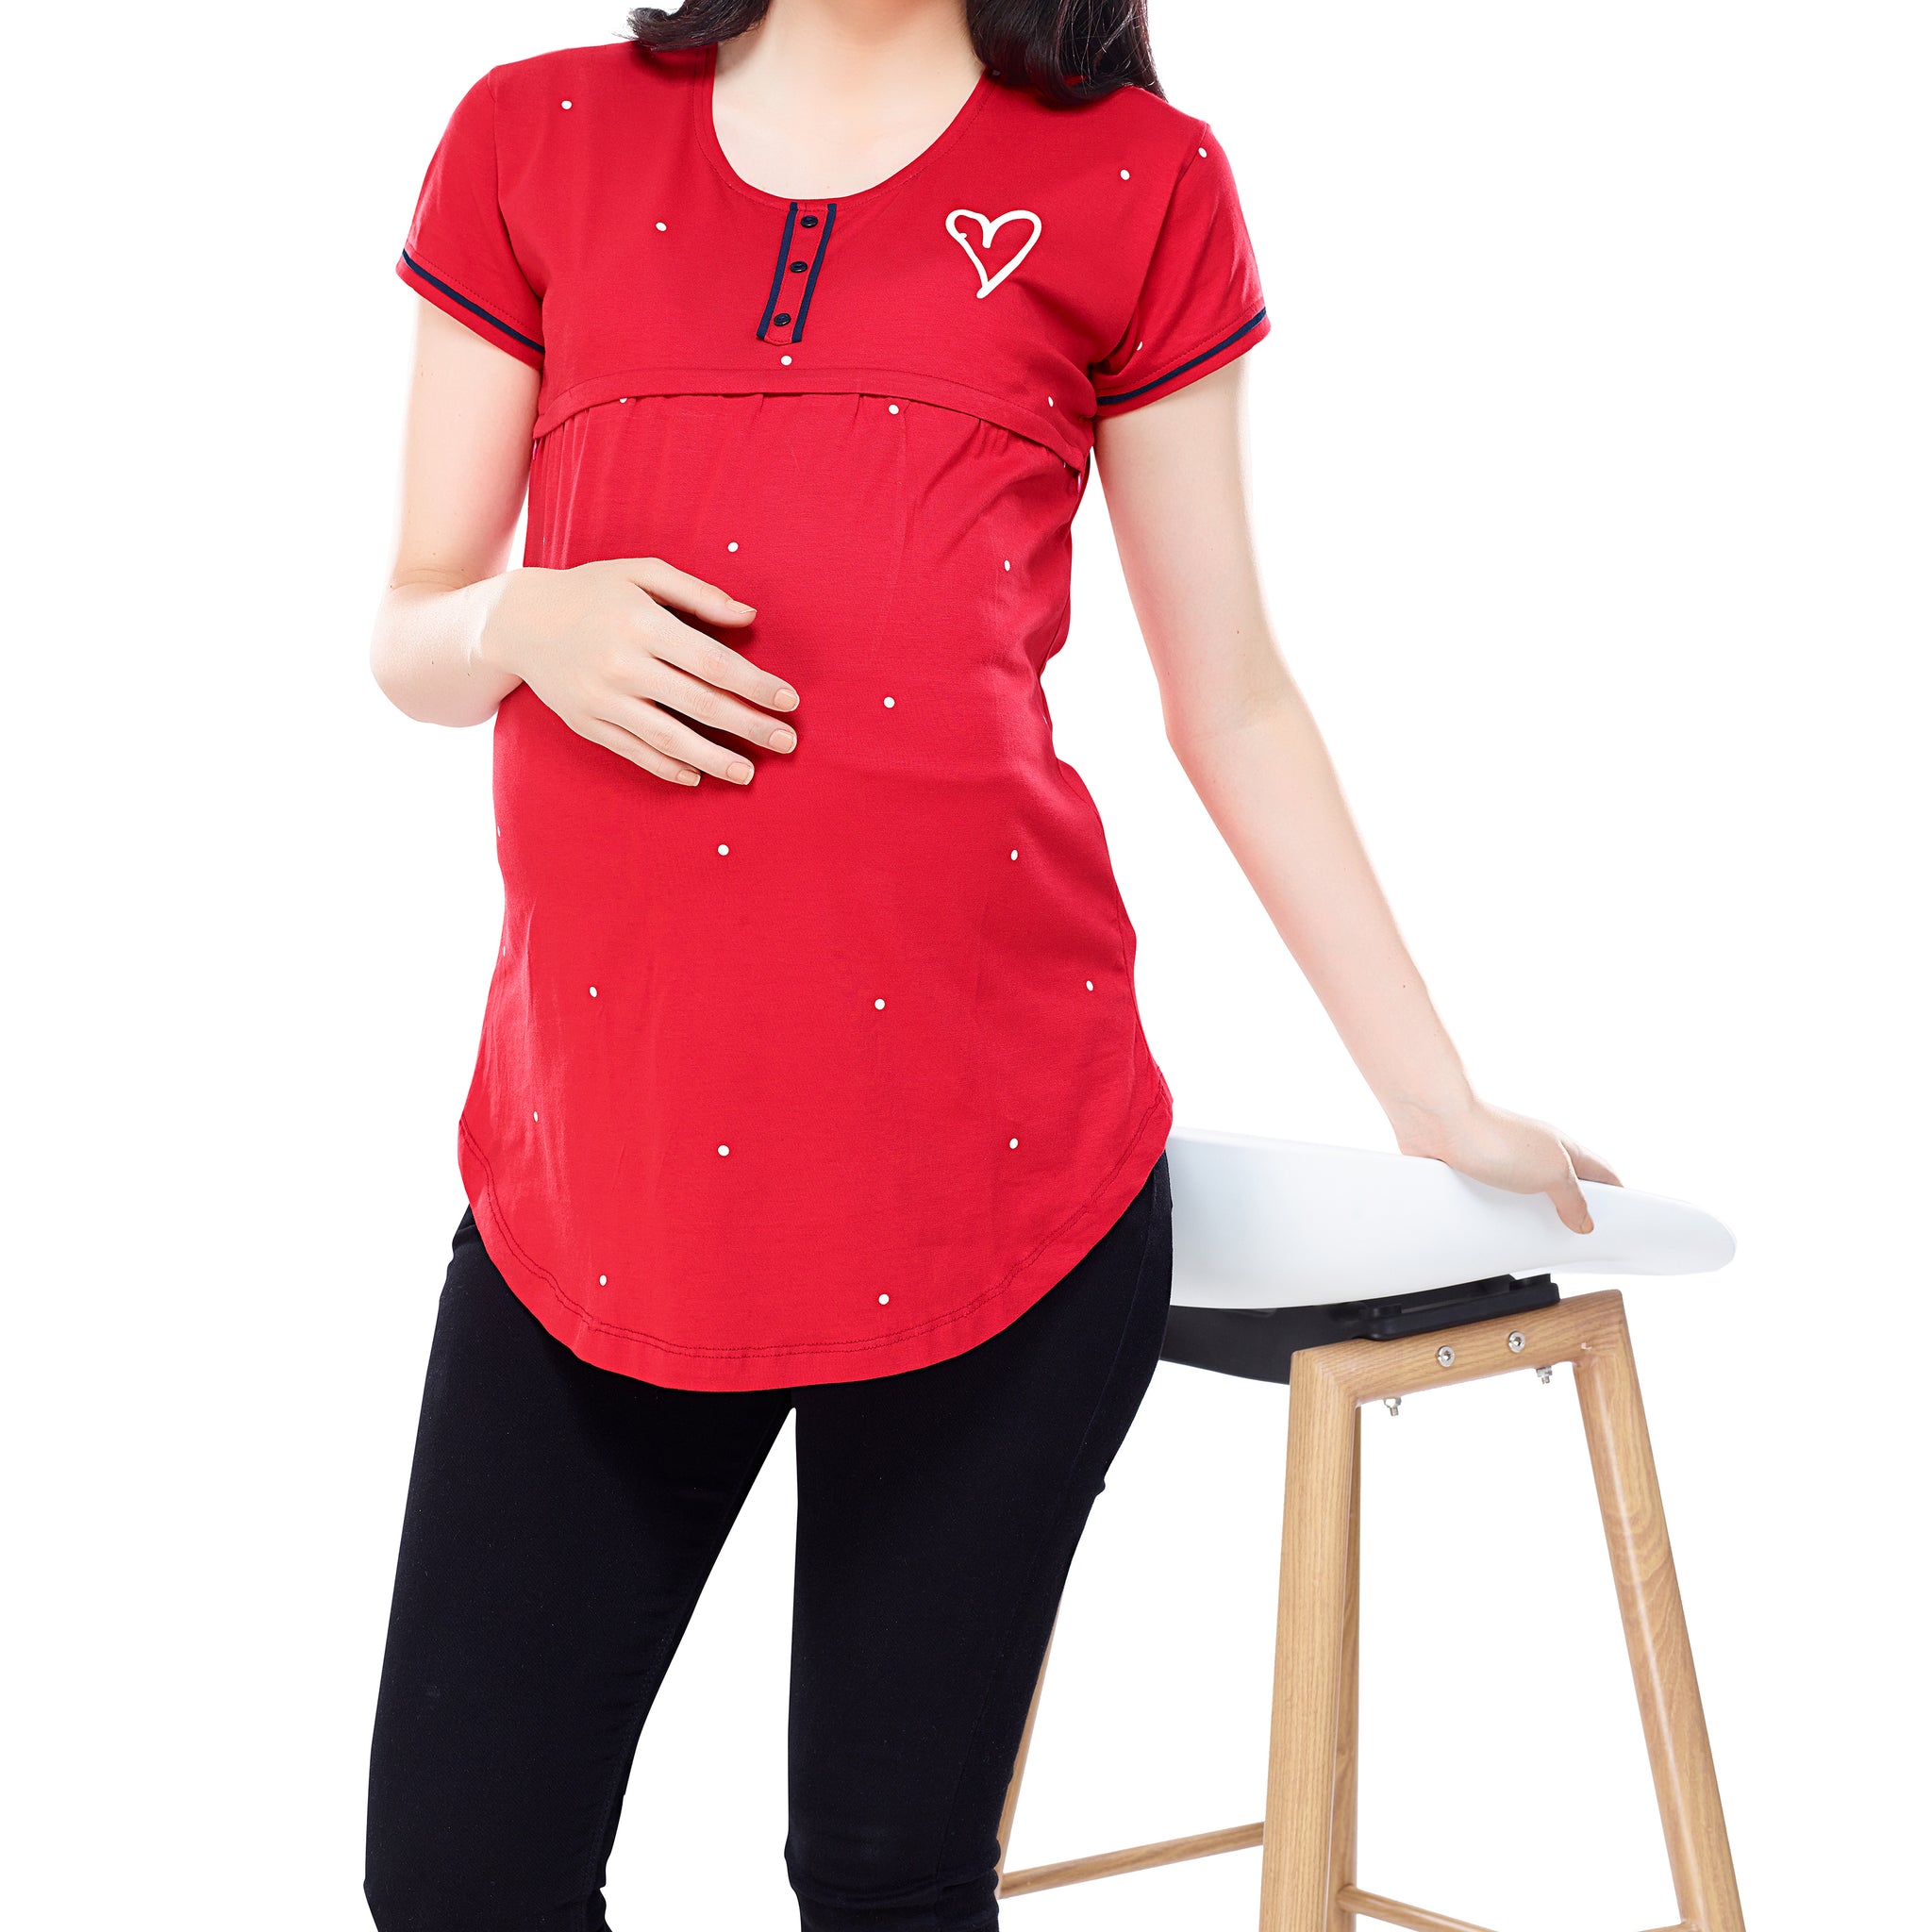 ZEYO Women Cotton Red Dot Print Maternity & Feeding Top